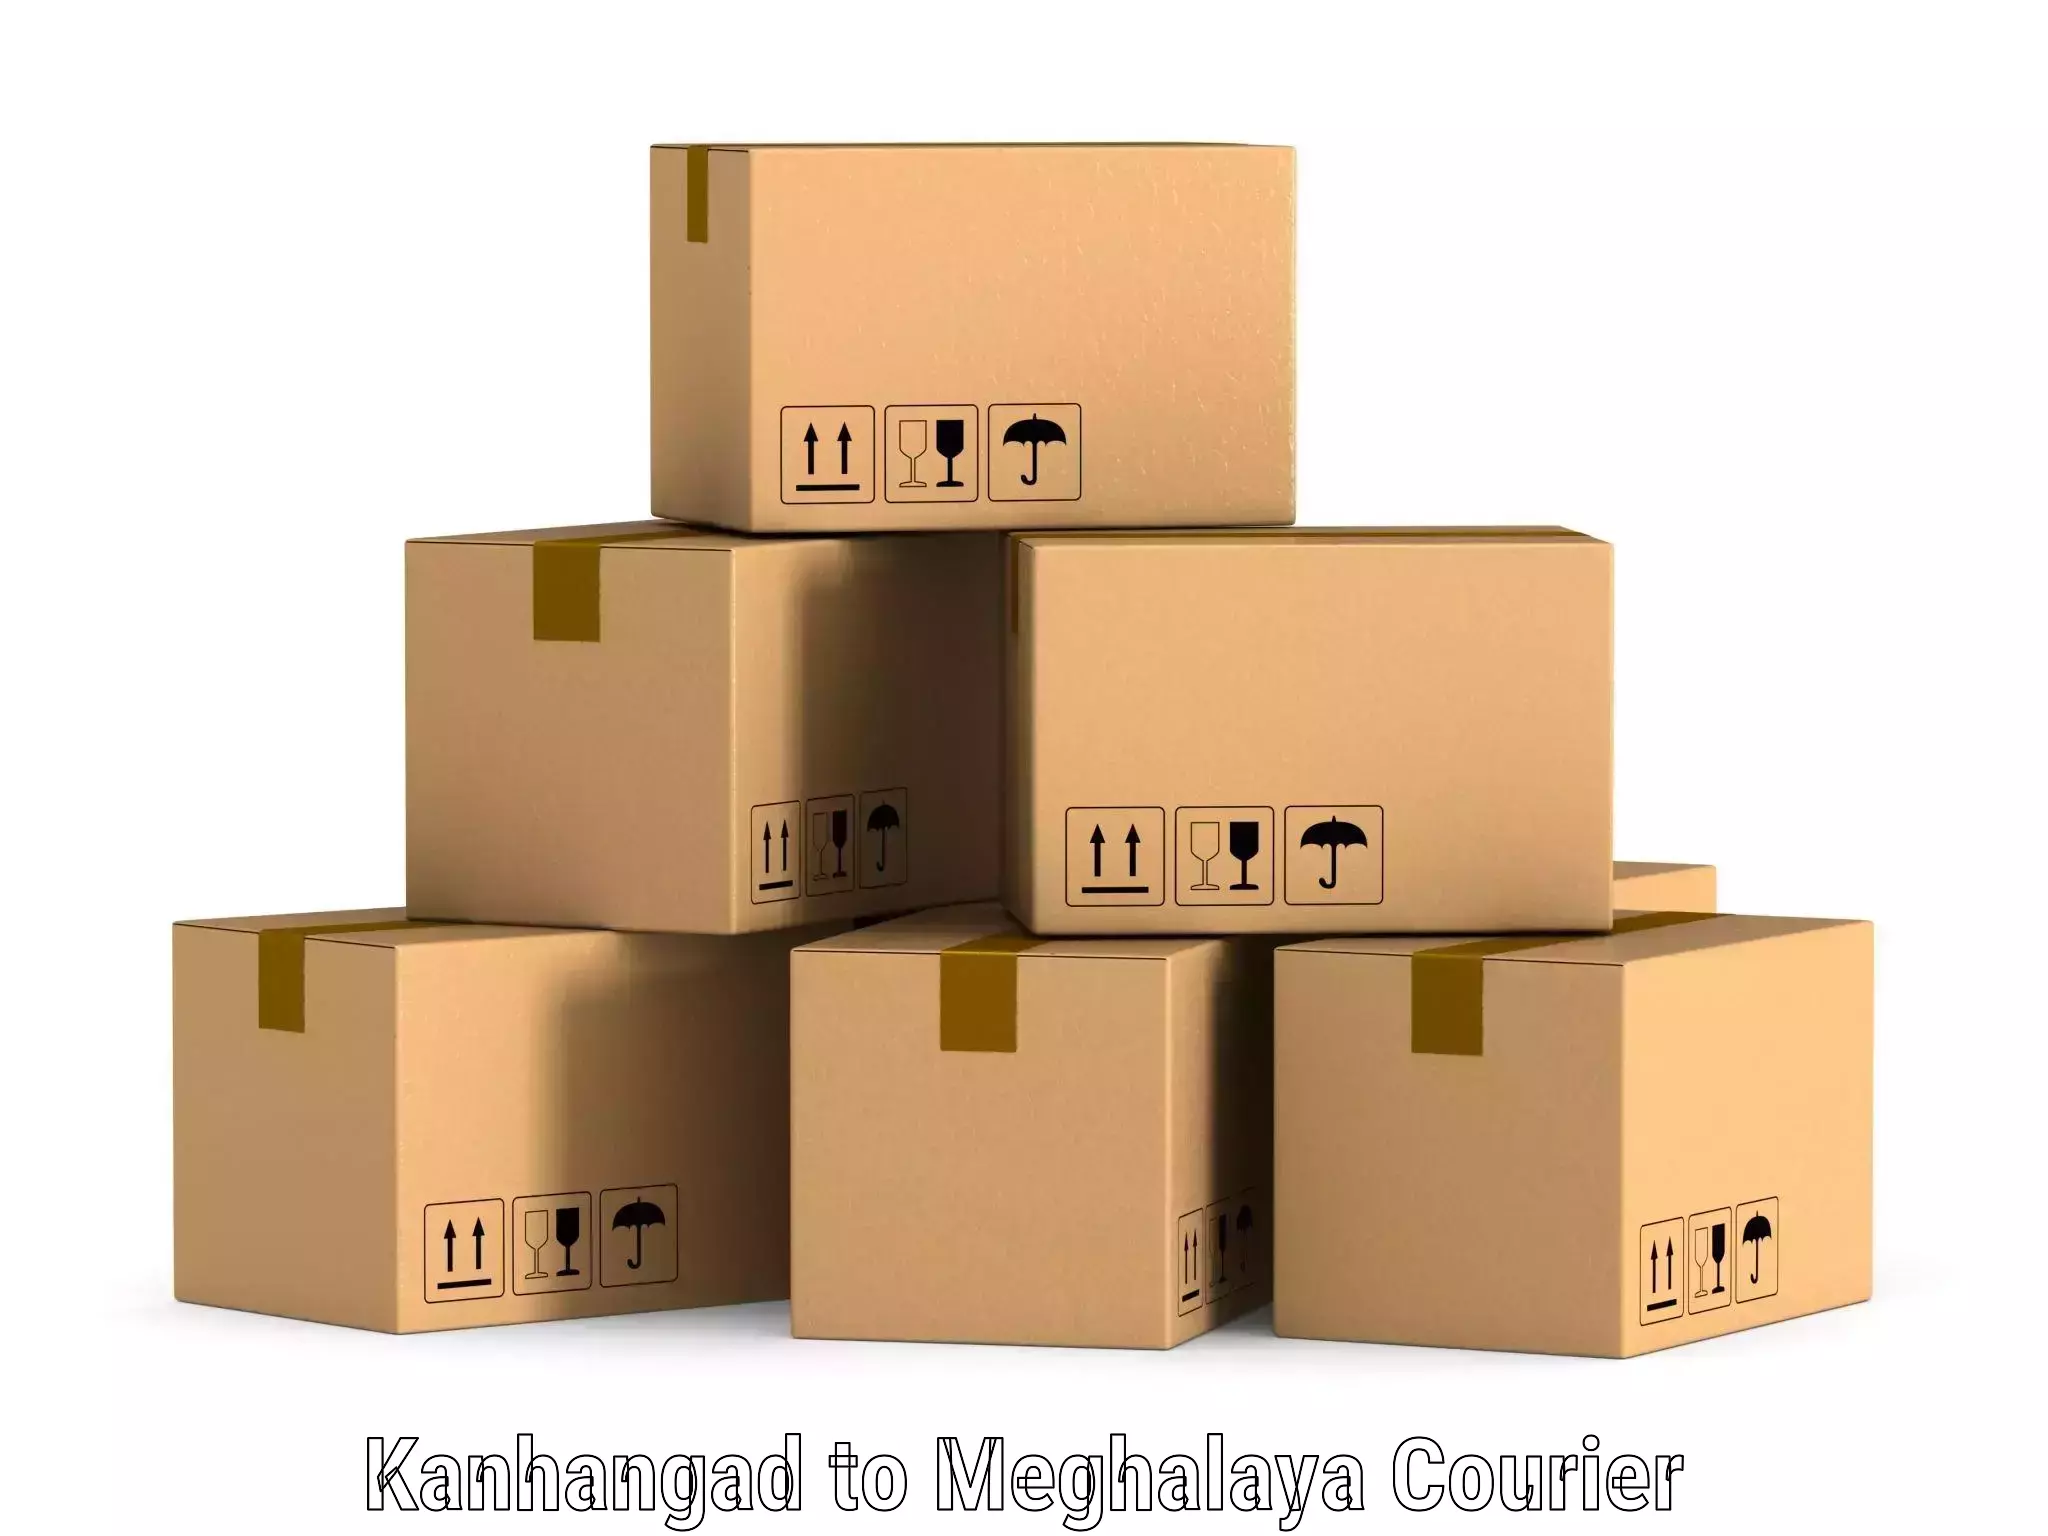 Express courier facilities Kanhangad to Meghalaya